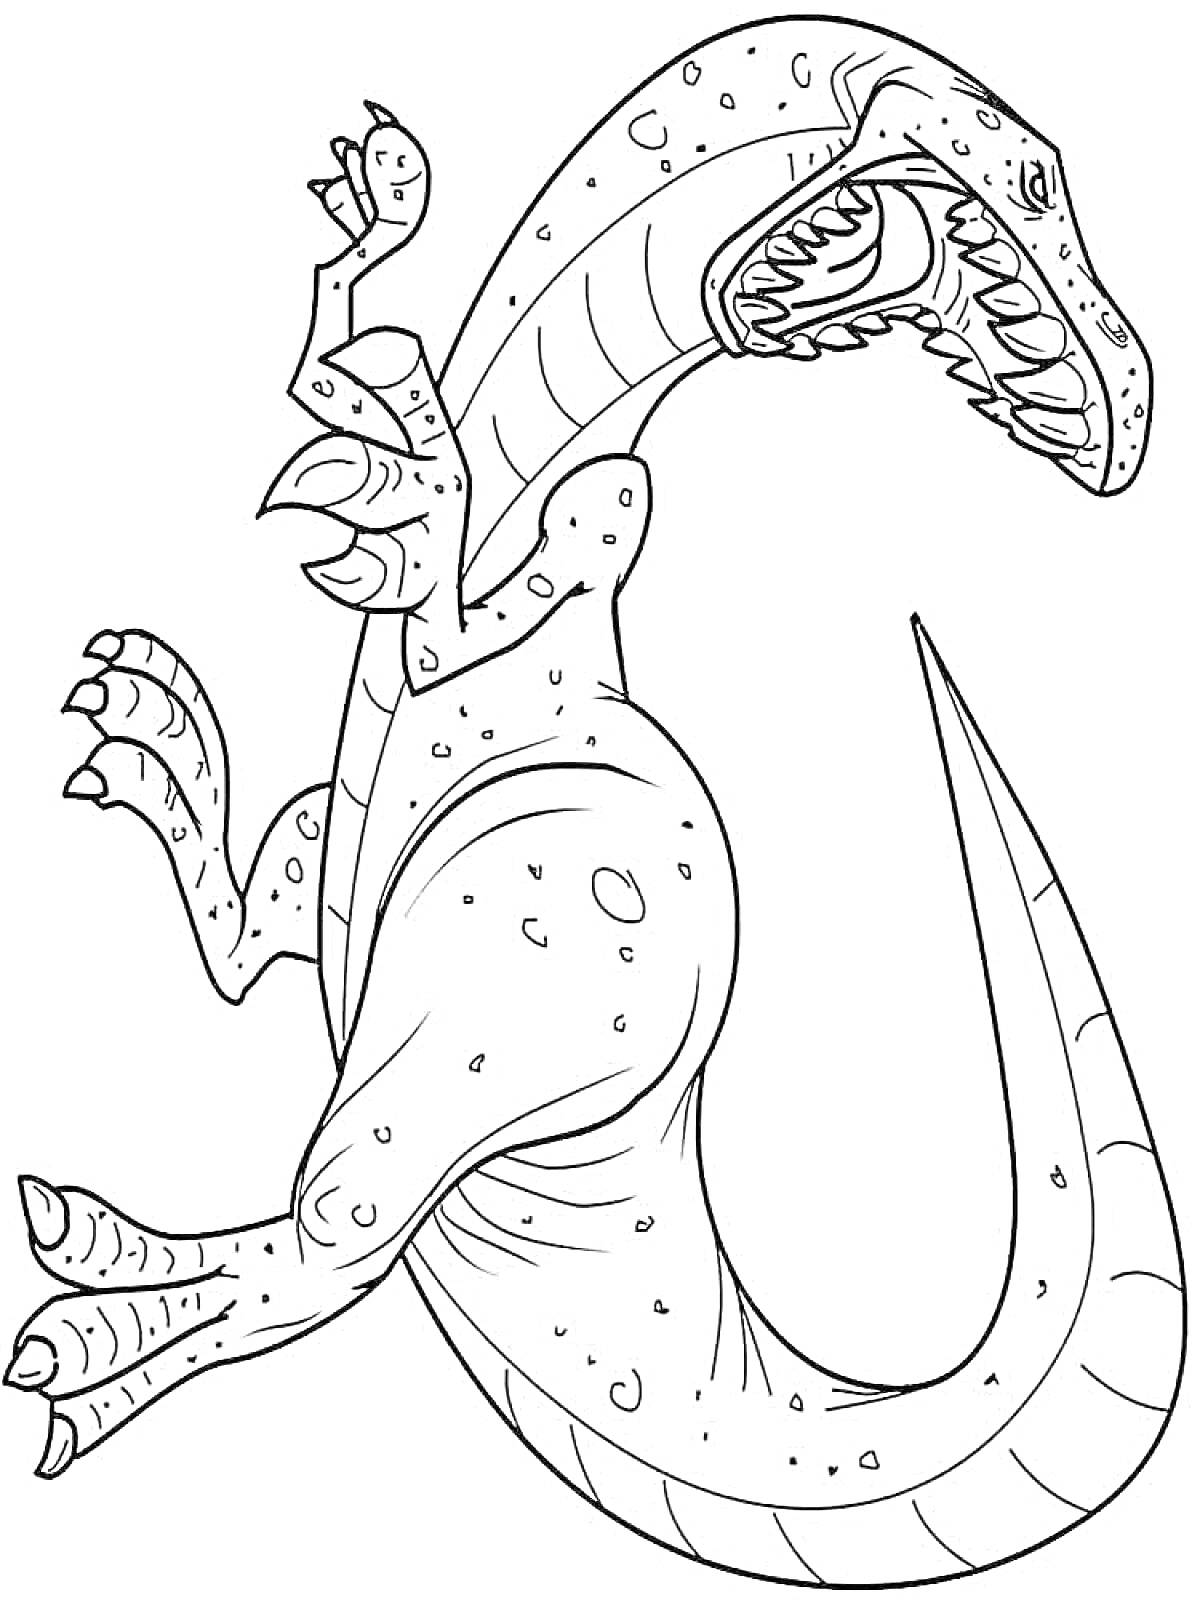 Раскраска Динозавр с длинным хвостом и открытой пастью, на теле участки кожи с неровными краями